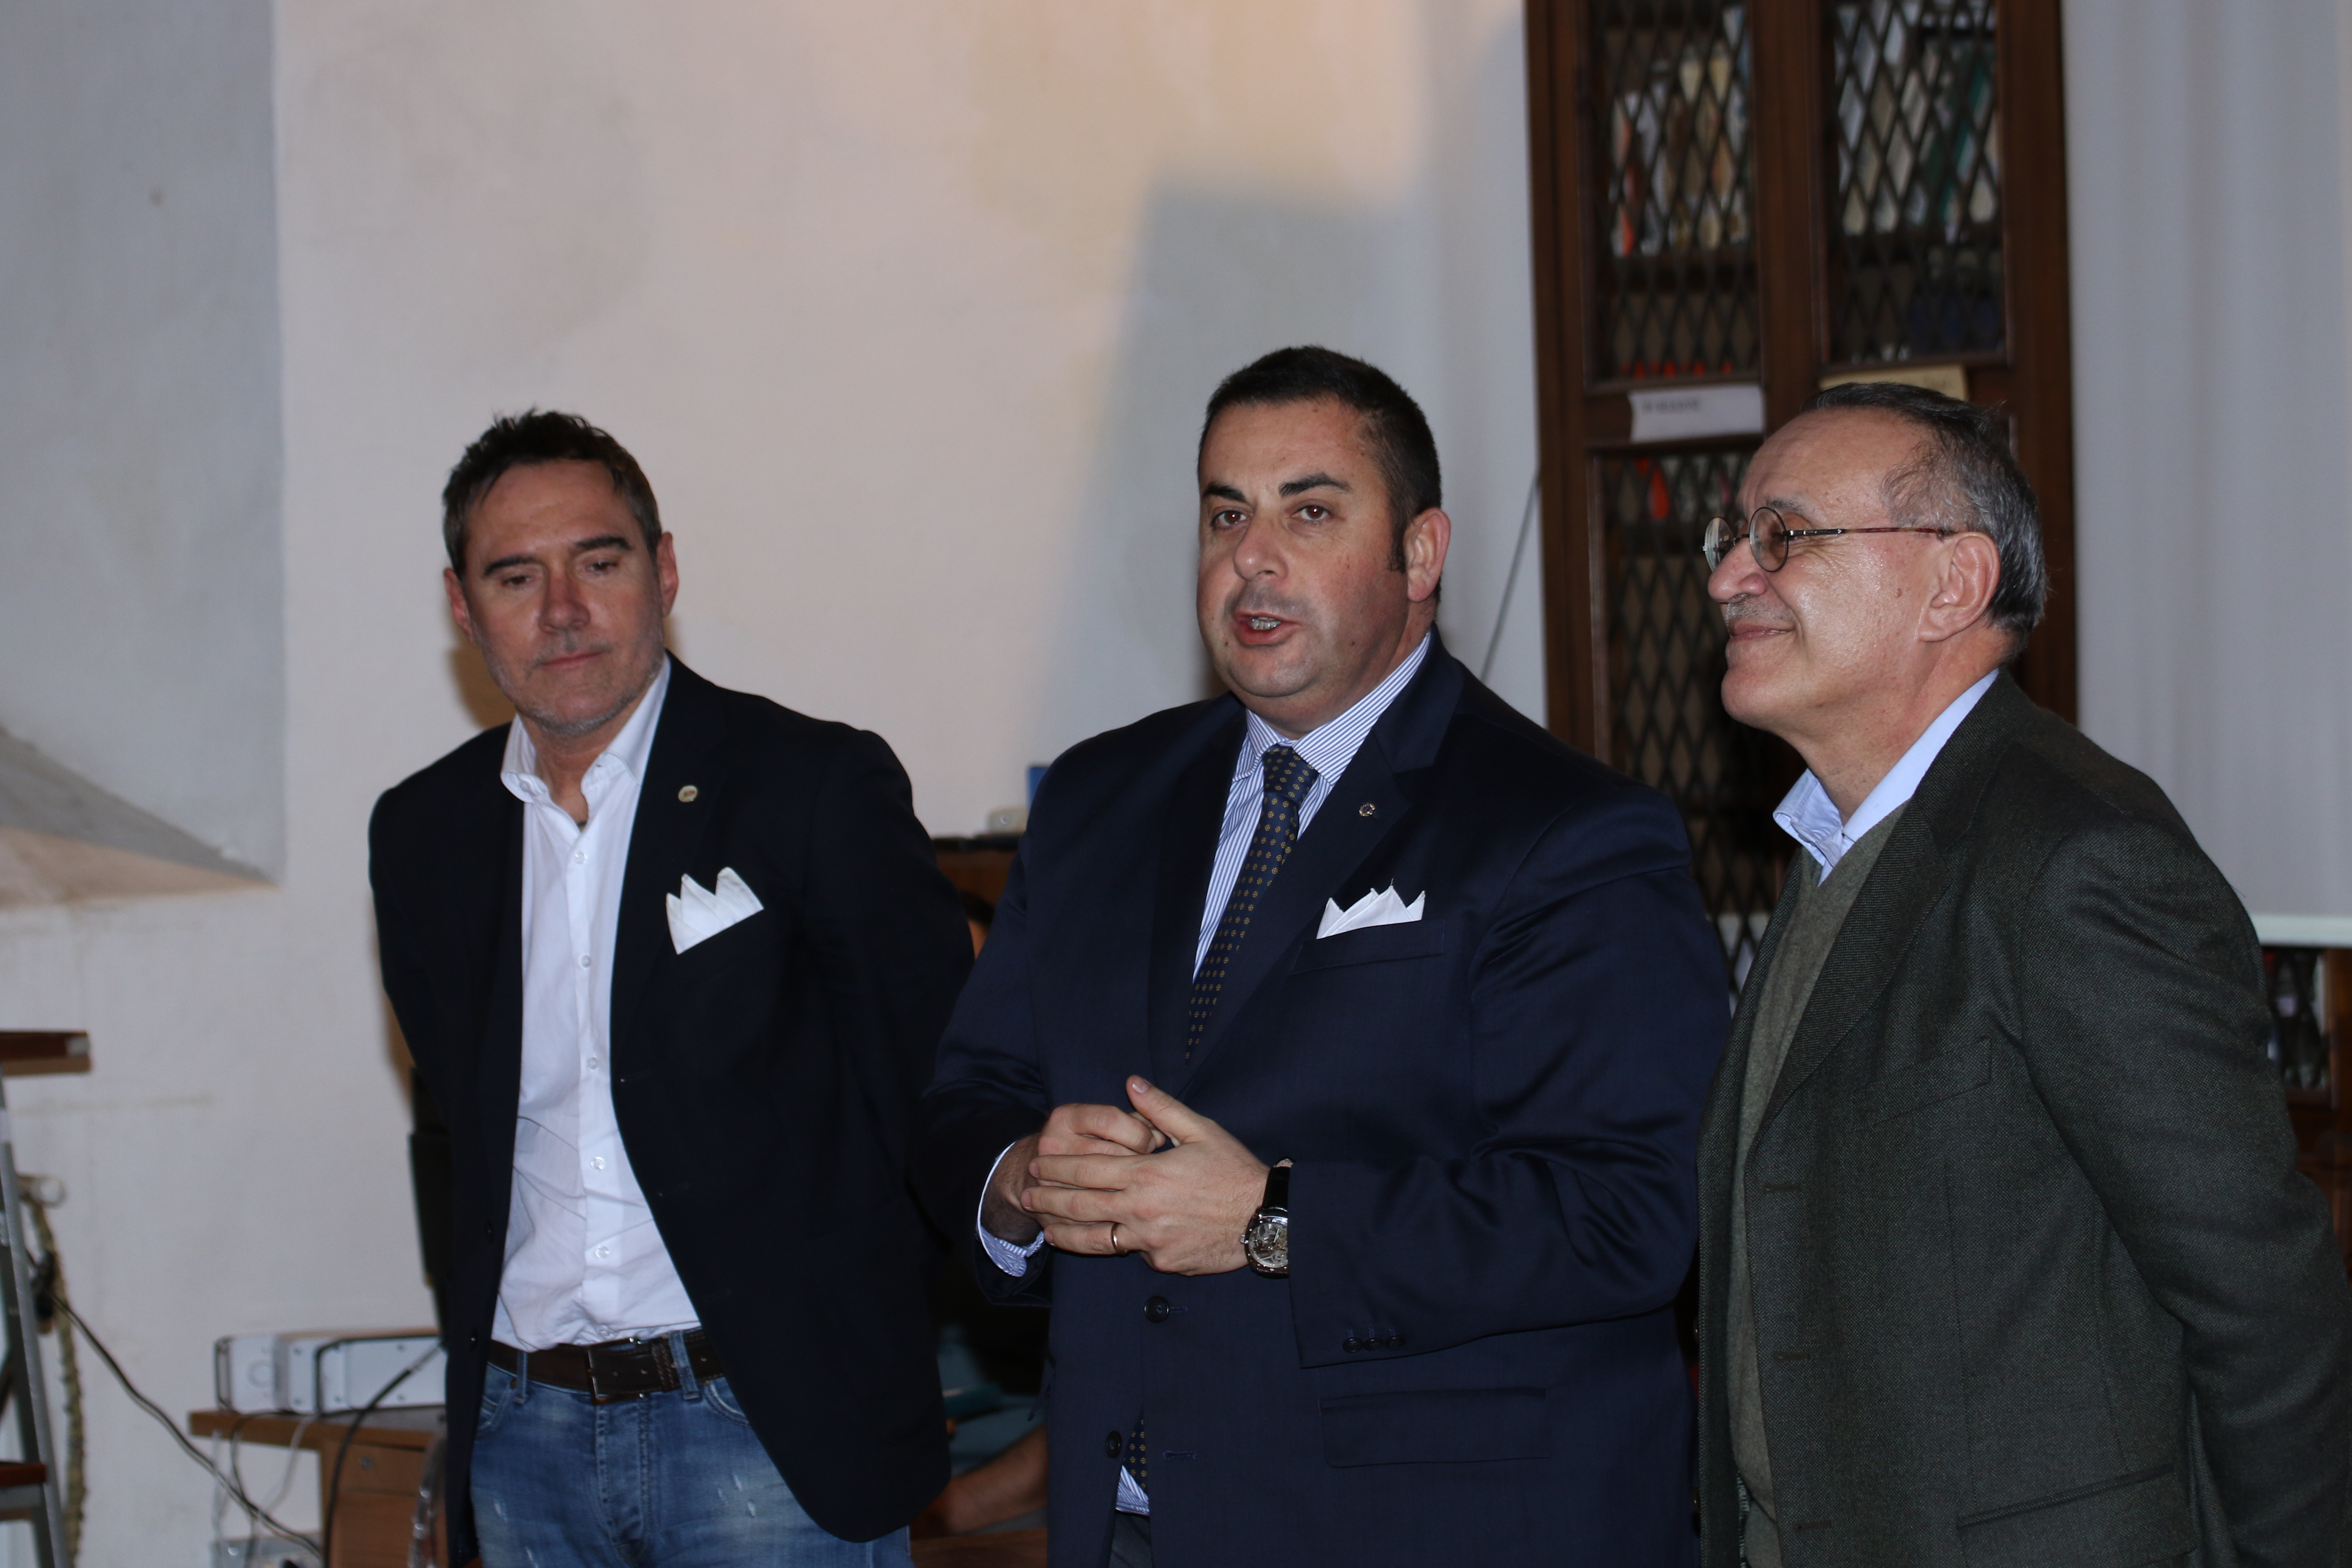 Da sinistra, l'assessore del Comune di Todi Ranchicchio, il Sindaco Ruggiano e il Dirigente Scolastico Guarente